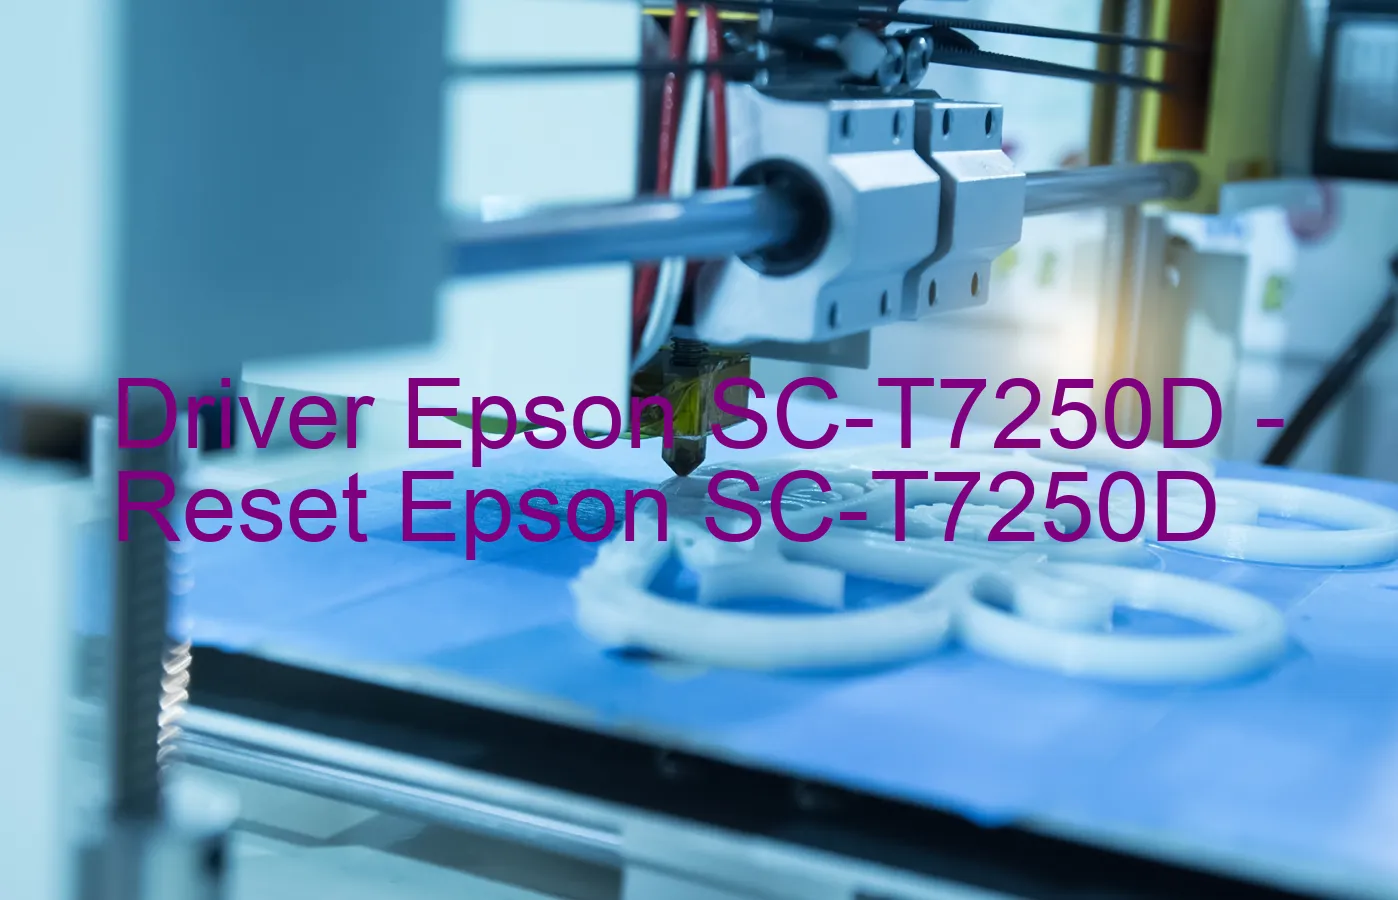 Epson SC-T7250Dのドライバー、Epson SC-T7250Dのリセットソフトウェア